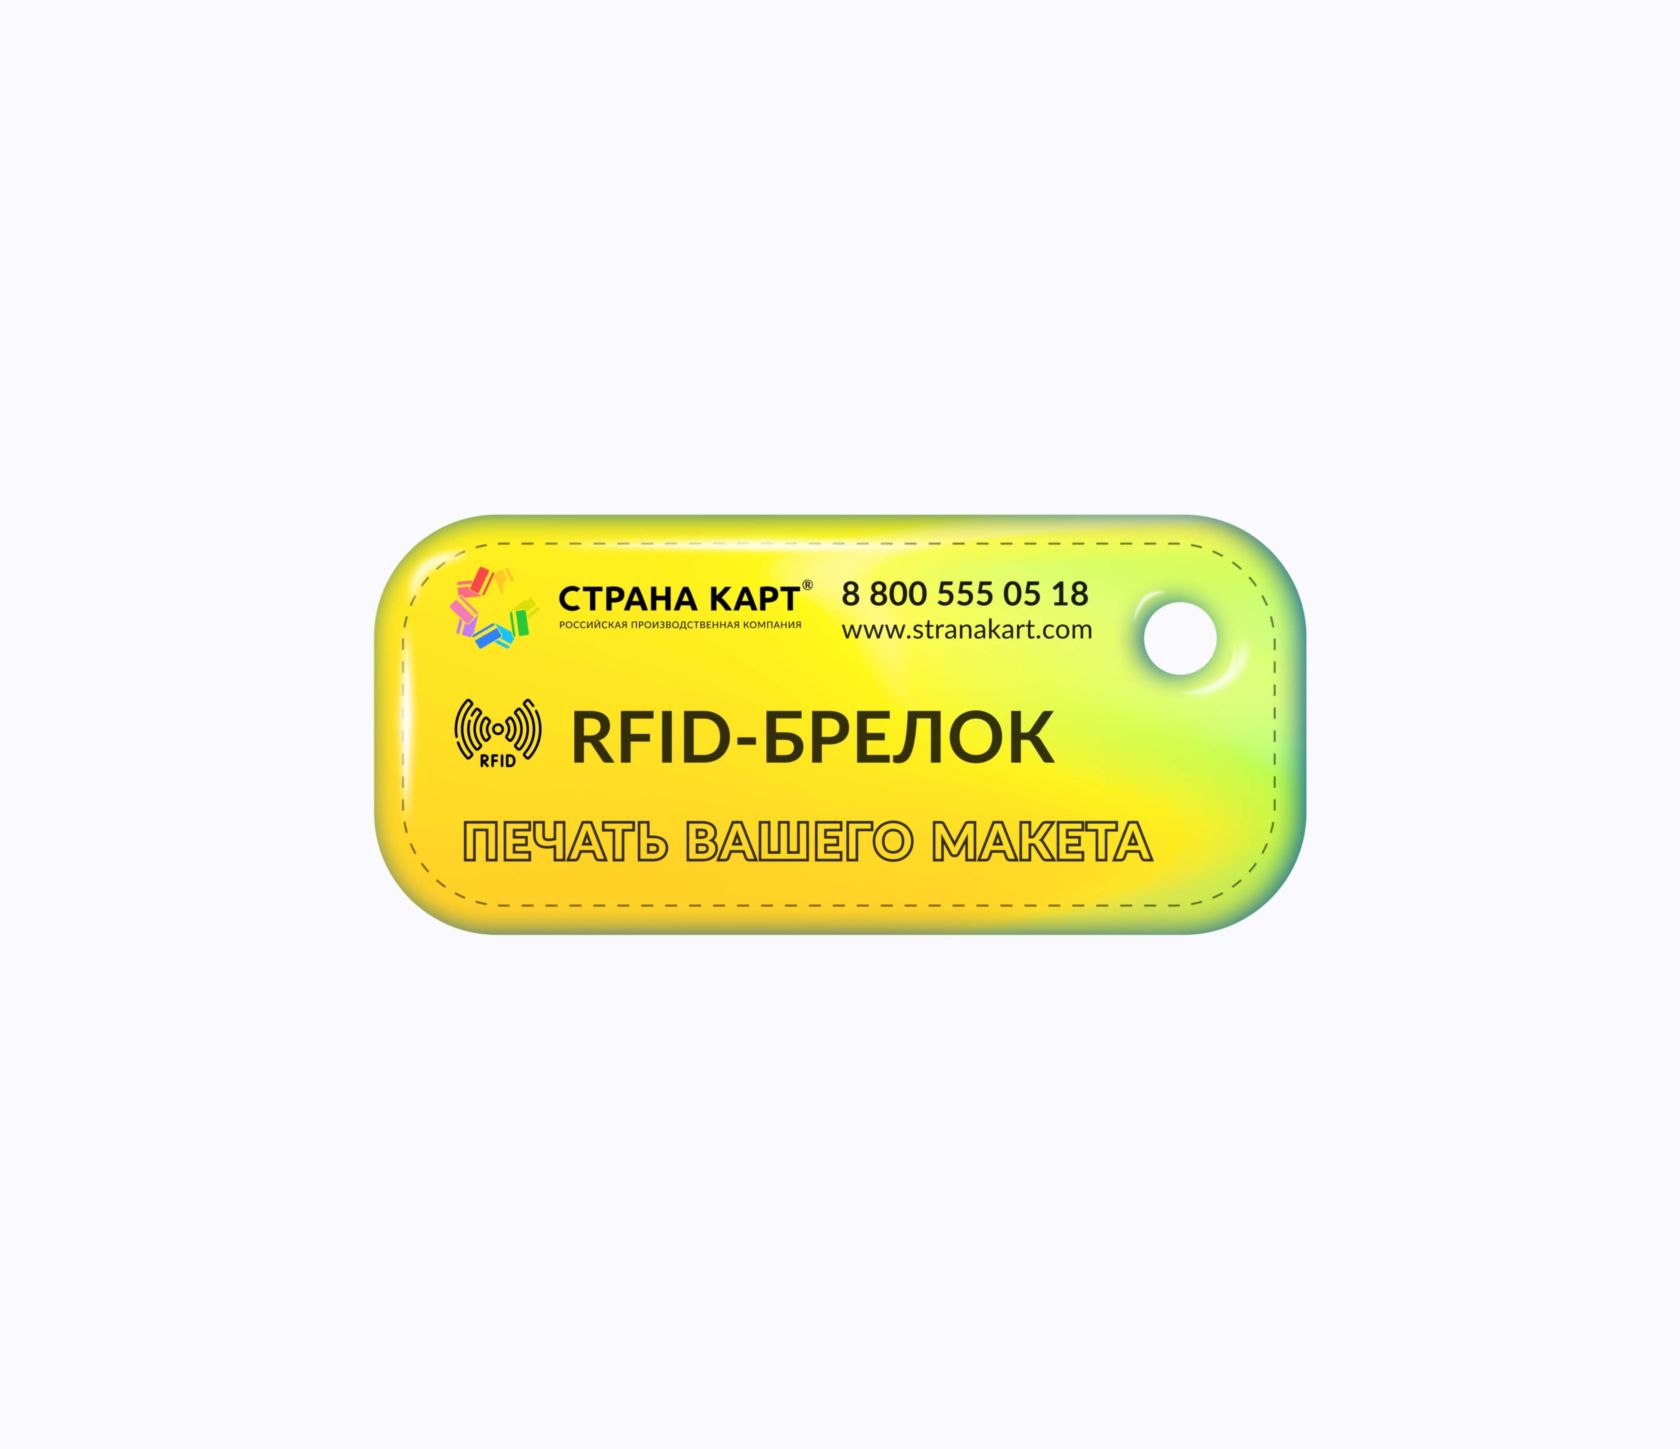 Прямоугольные Мини RFID-брелоки NEOKEY® с чипом для парковок RFID-брелоки NEOKEY® с чипом для парковок